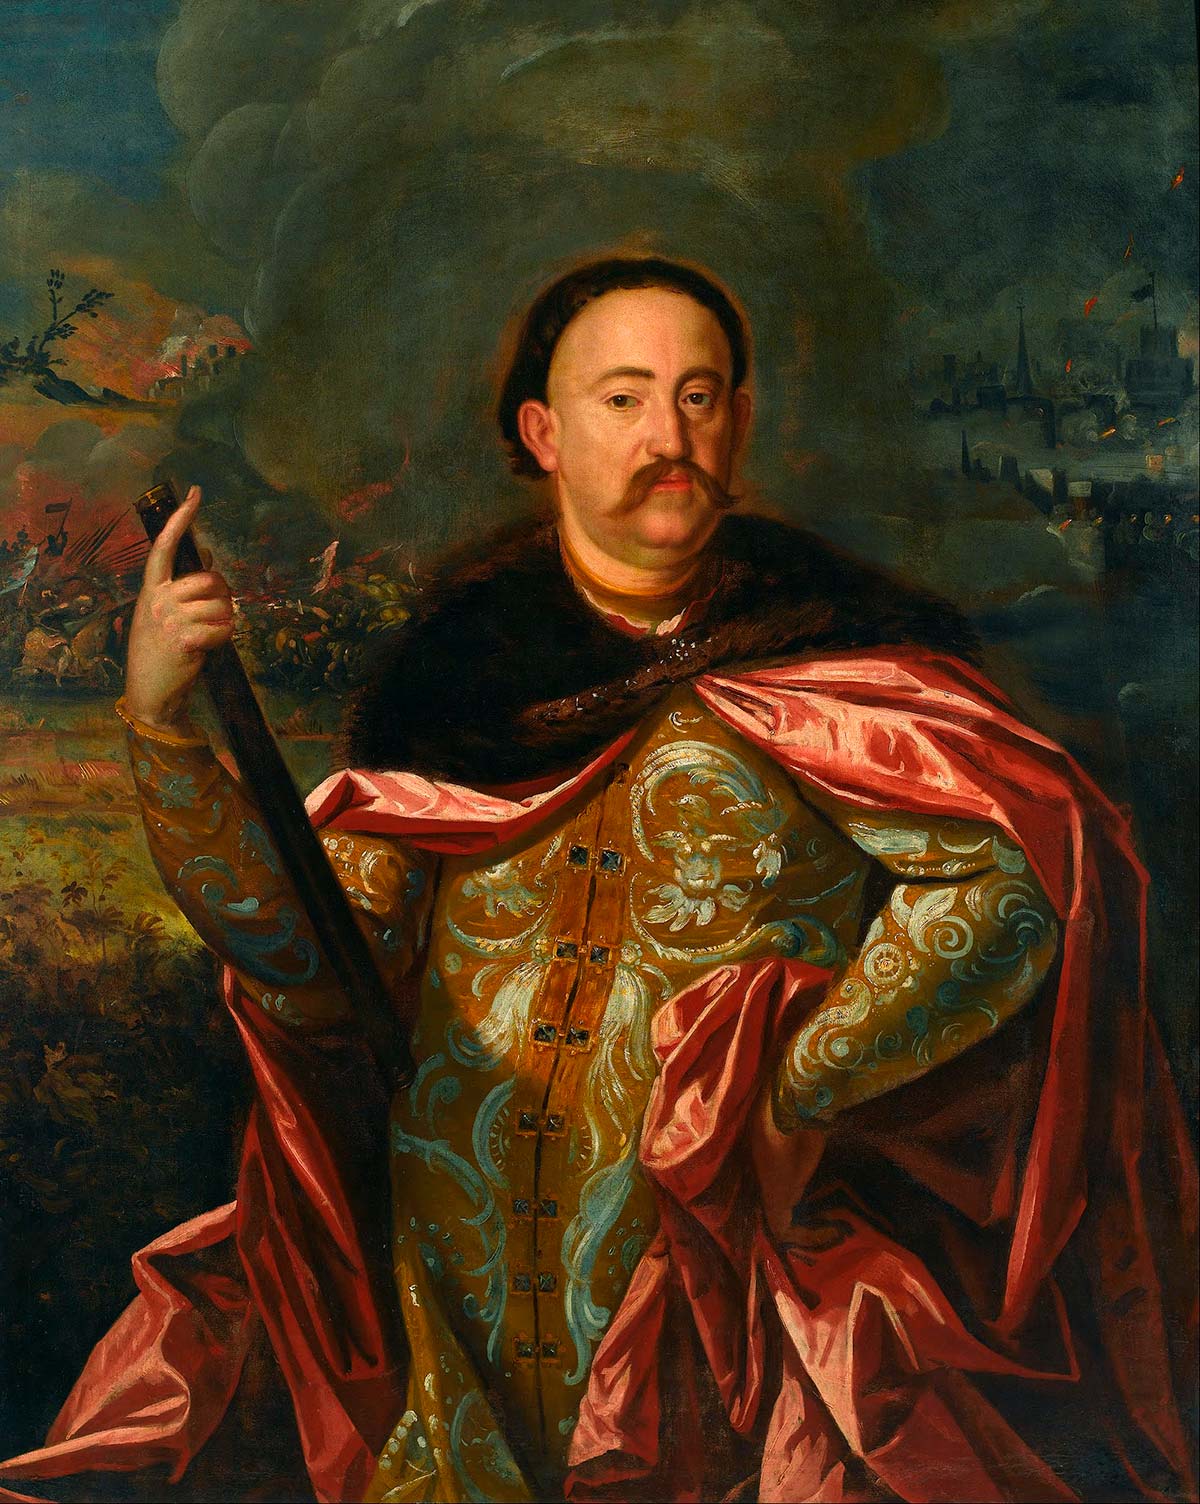 Ян III Собеский (1629-1696) — польский король (©wikipedia)